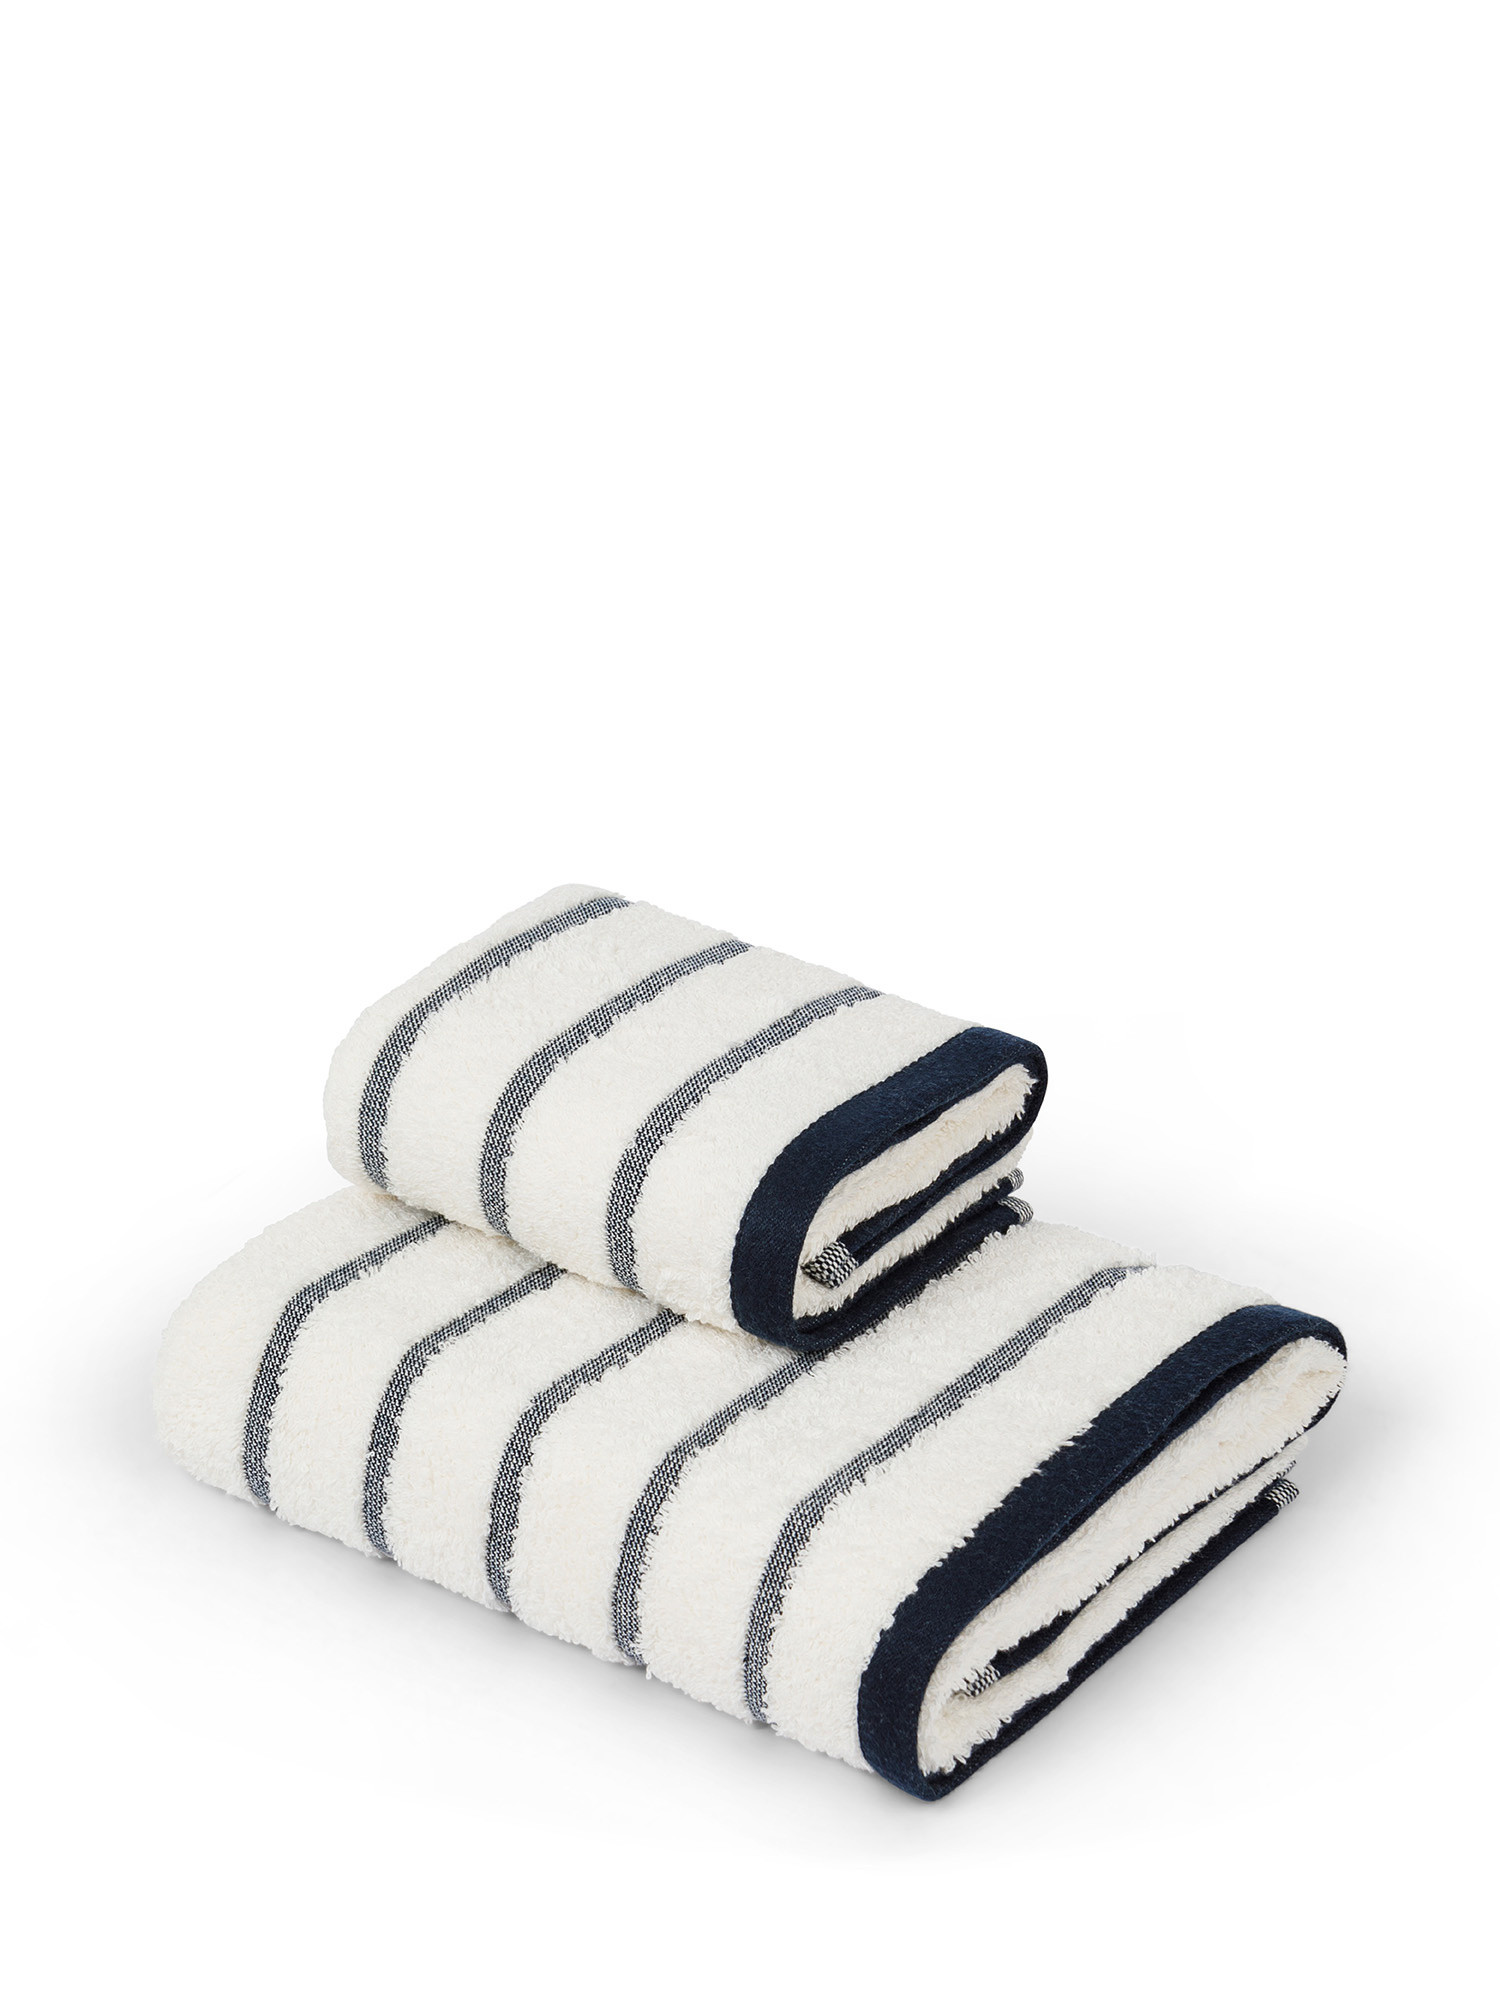 Asciugamano spugna di cotone motivo righe marinare, Bianco, large image number 0